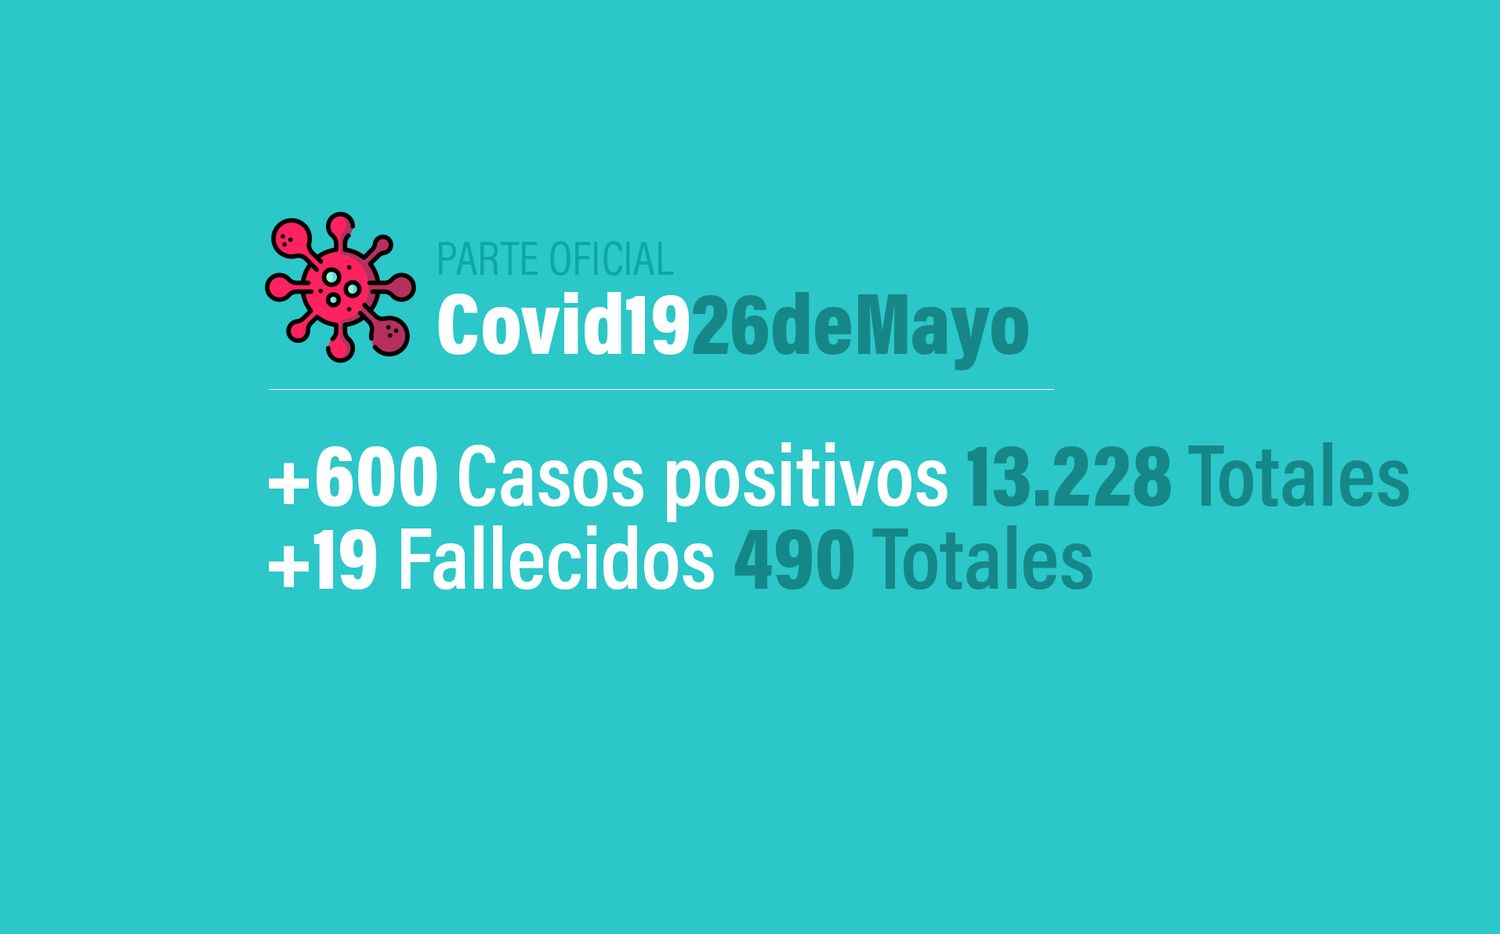 Coronavirus en Argentina: 600 nuevos casos, 13228 confirmados y 490 muertes, al 26 de mayo